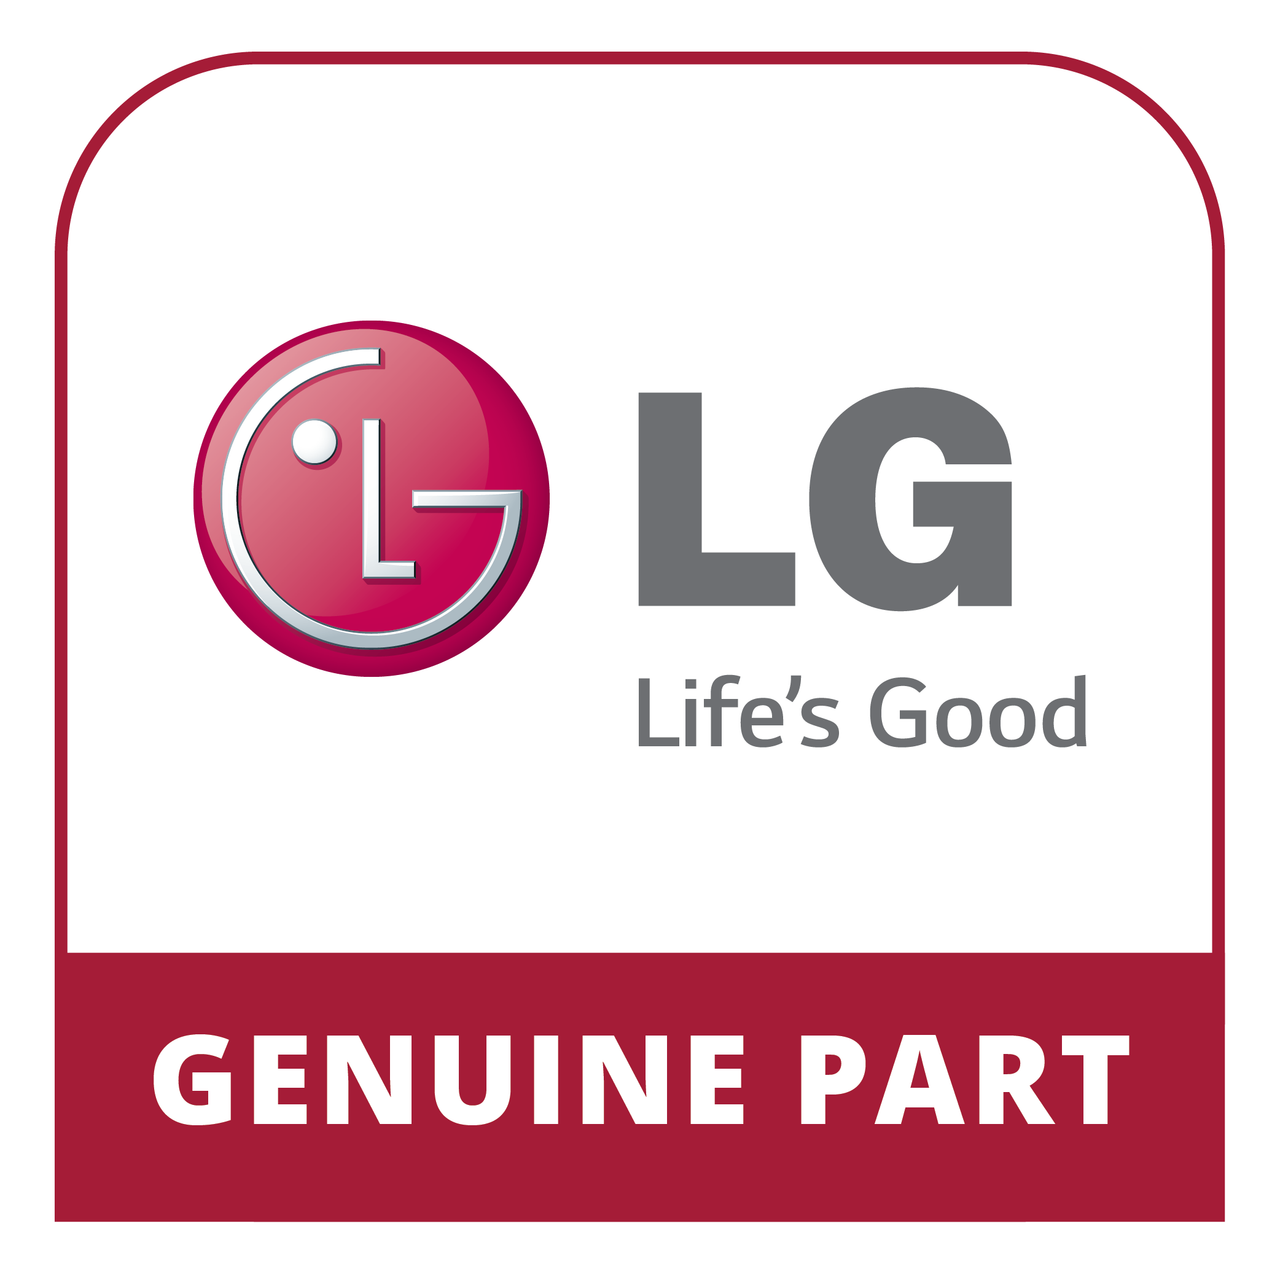 LG AGM30016913 - Cover D3 Pjt - - - Genuine LG Part